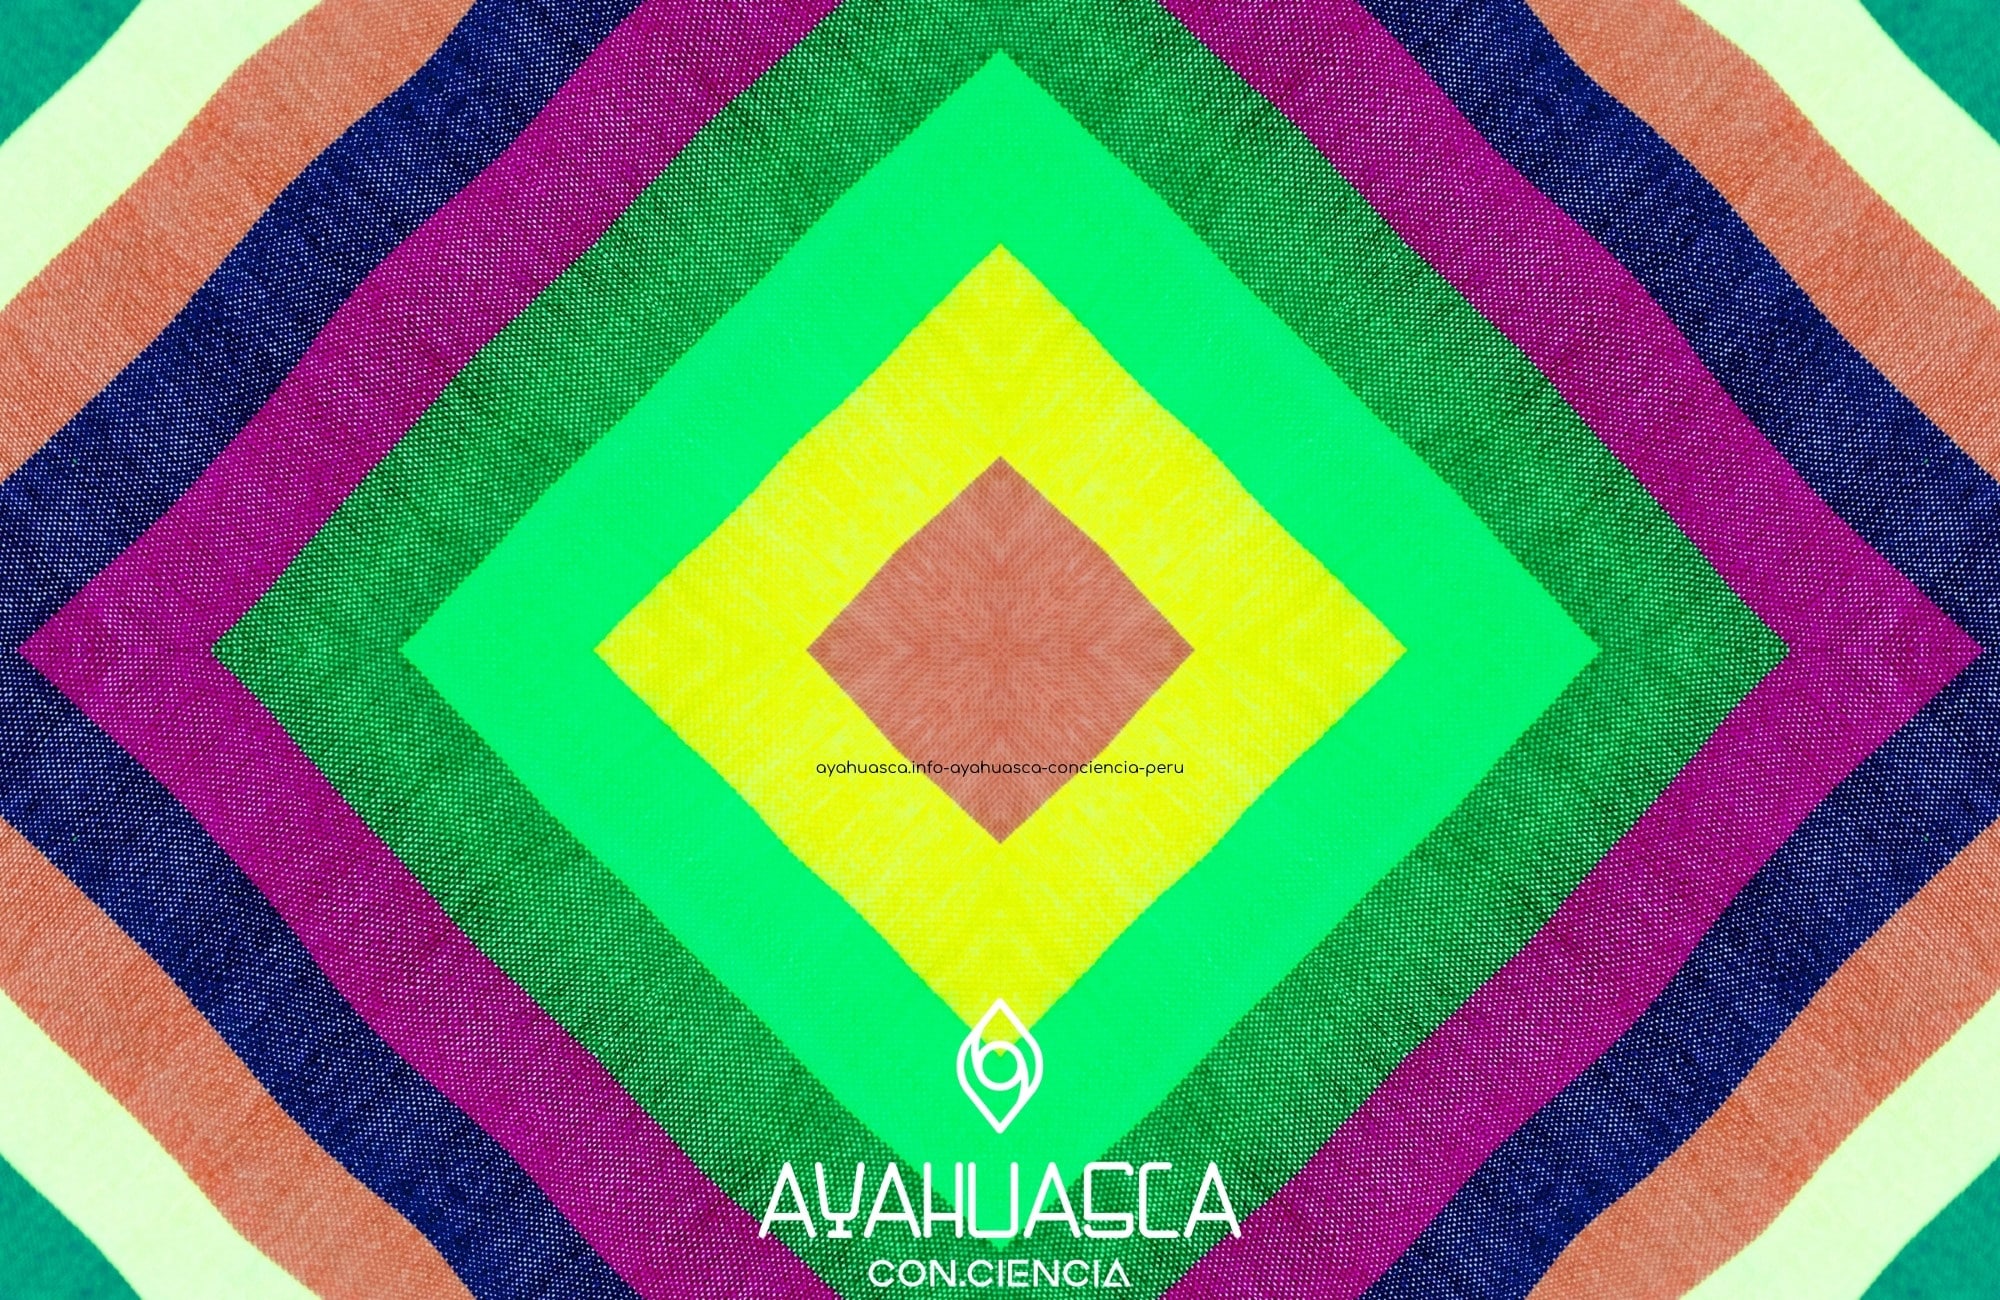 ayahuasca.info ayahuasca conciencia peru 5